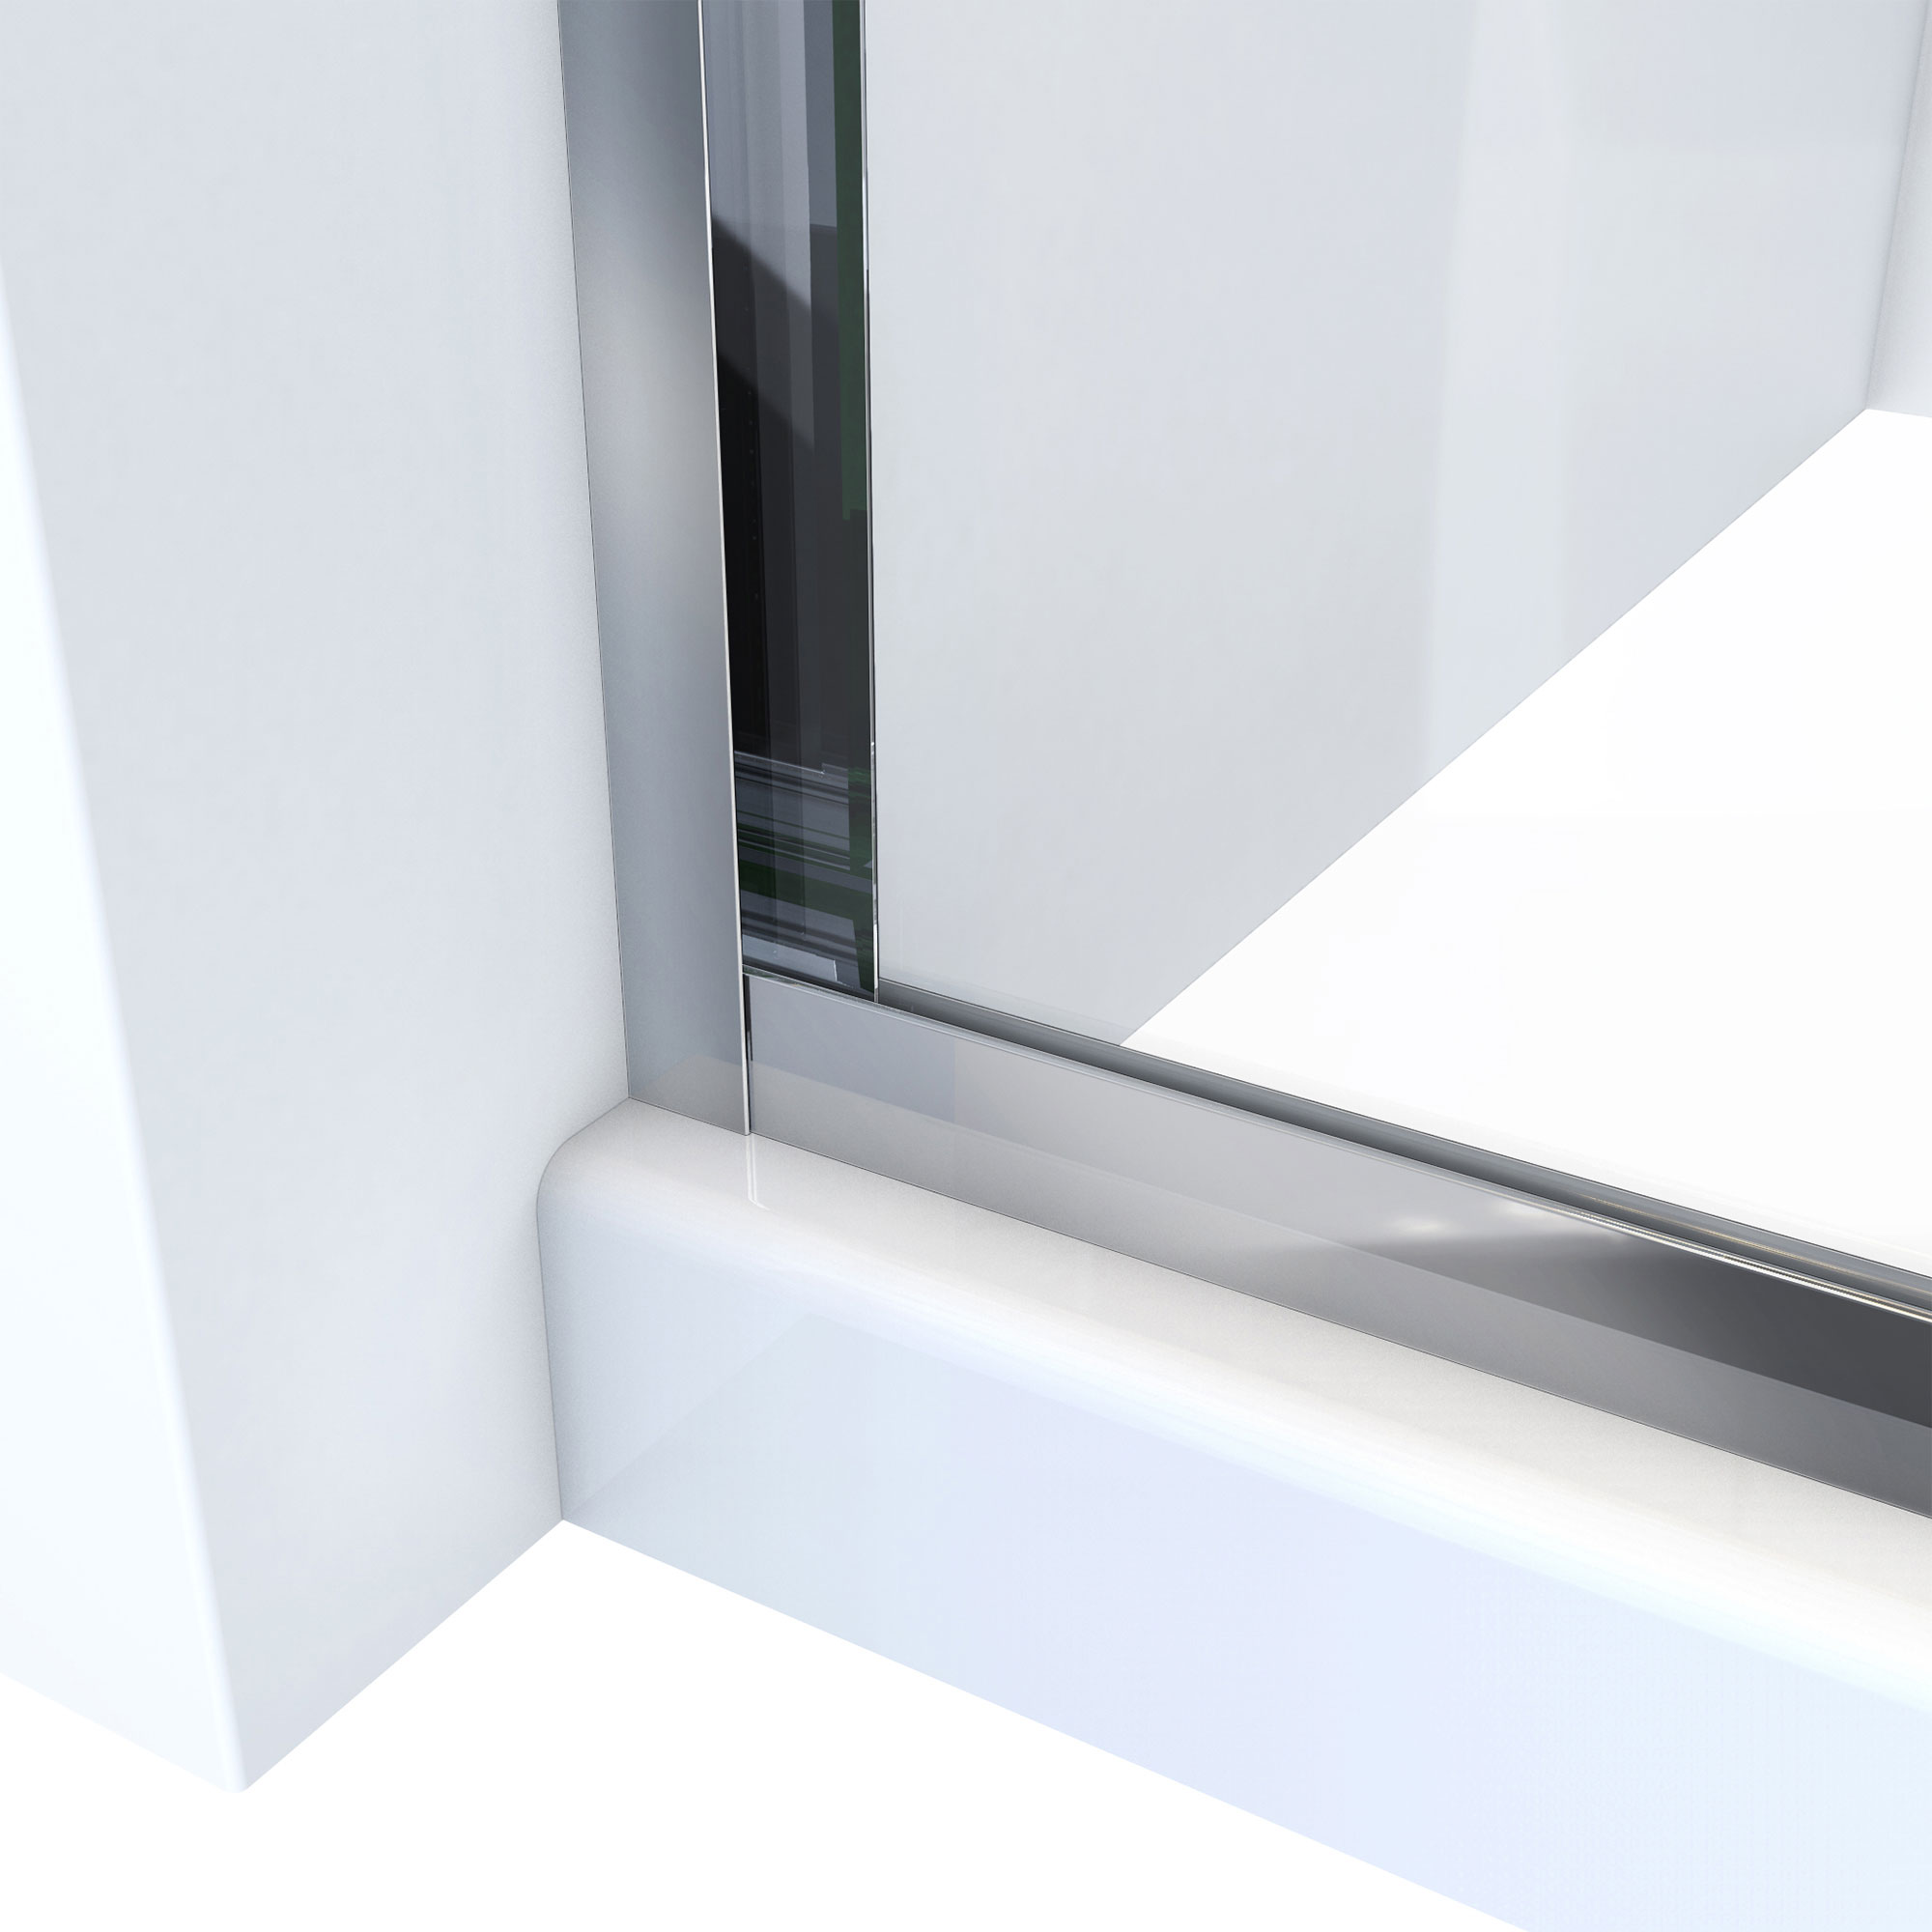 DreamLine Alliance Pro HV 56-60 in. W x 70 1/2 in. H Semi-Frameless Sliding Shower Door in Chrome and Clear Glass